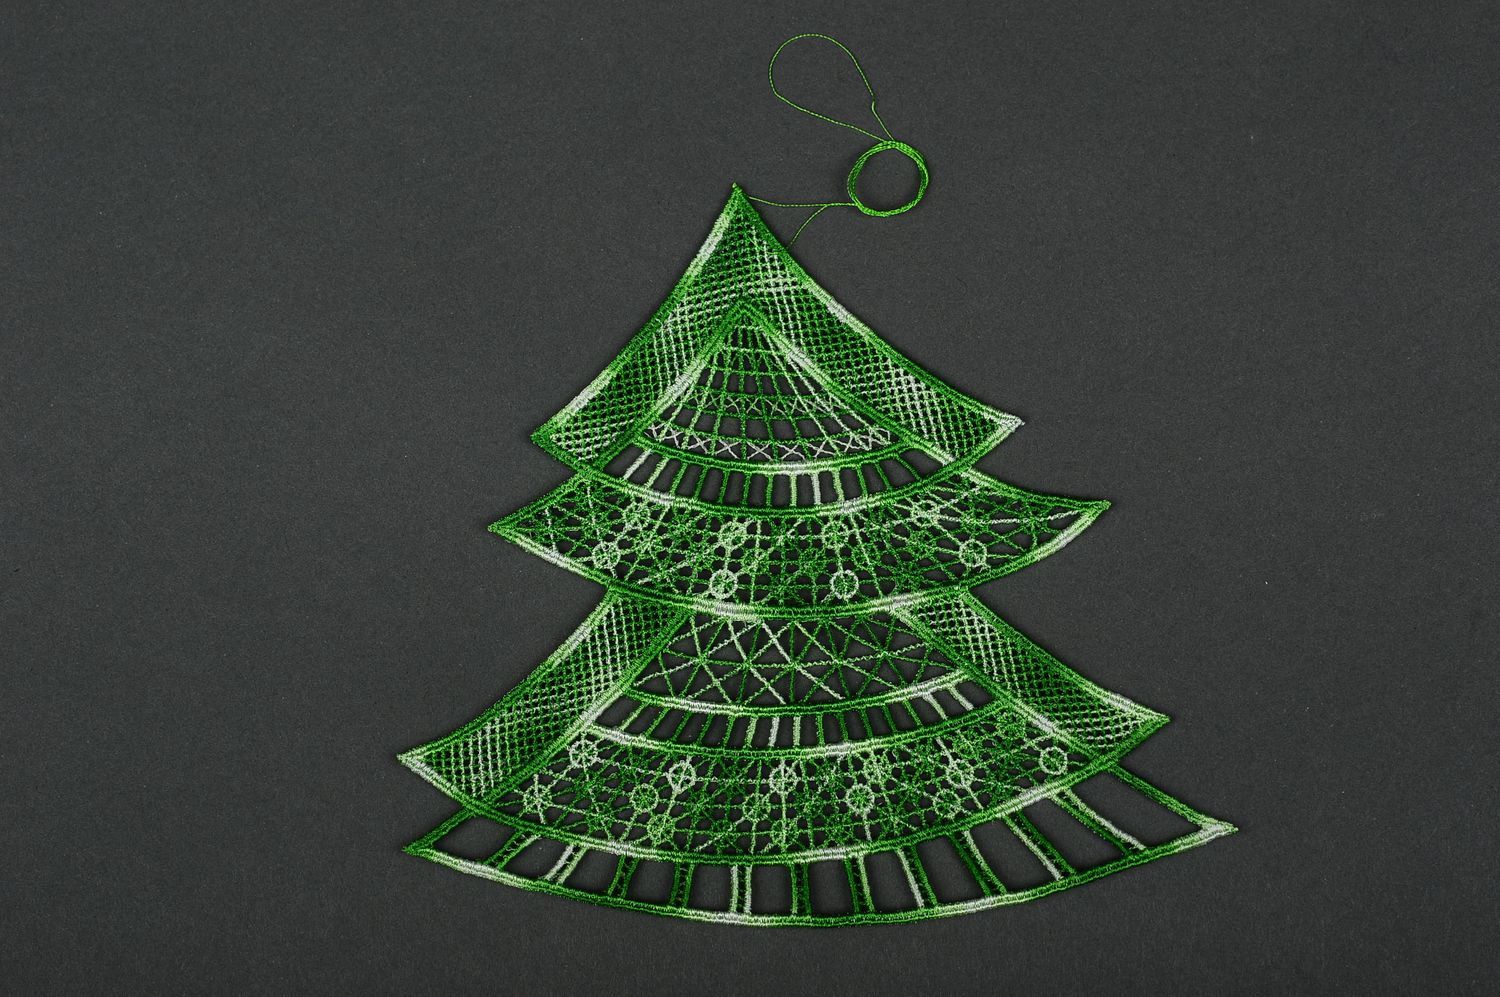 Árbol de Navidad hecho a mano color verde elemento decorativo adorno navideño foto 4